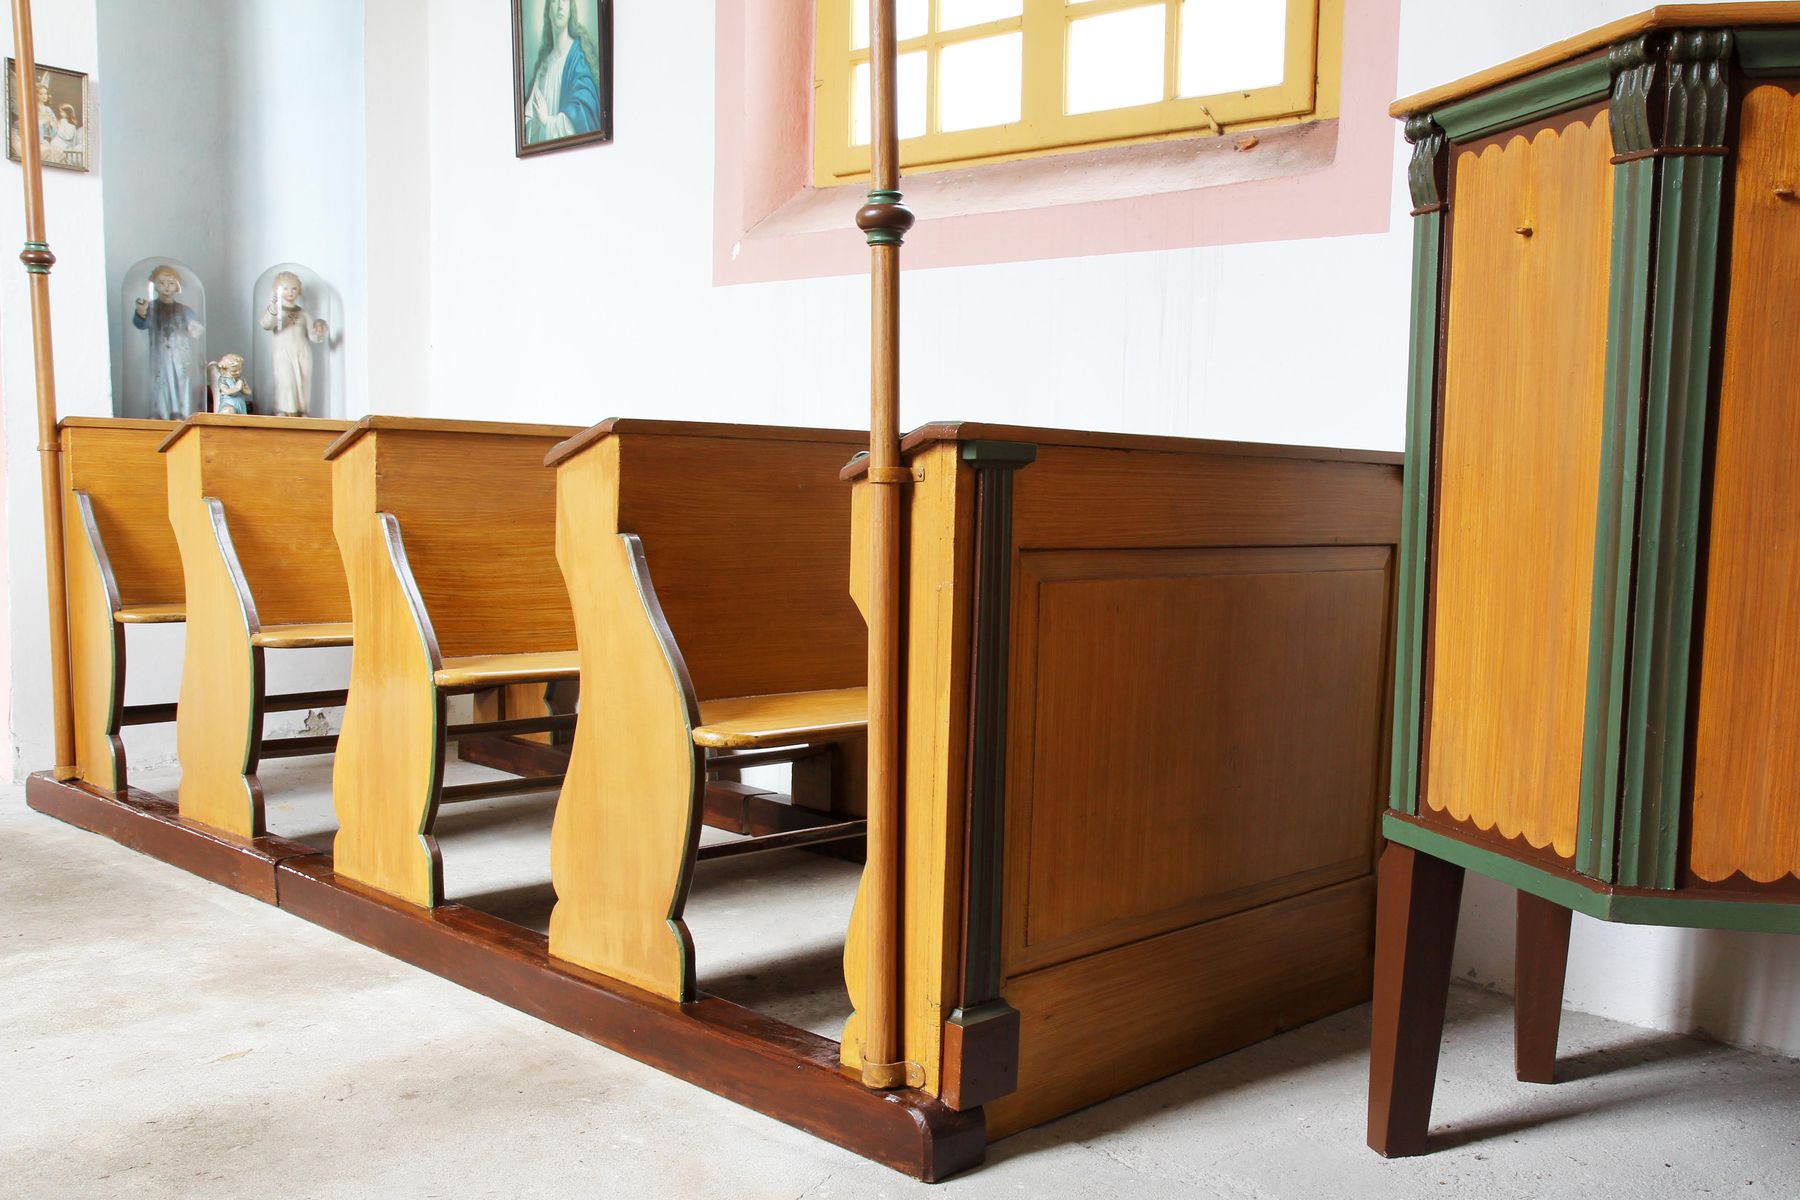 Restaurovali jsme kostelní lavice v kostele sv. Prokopa v Otvovicích - Restaurování kostelní lavice po restaurování 04